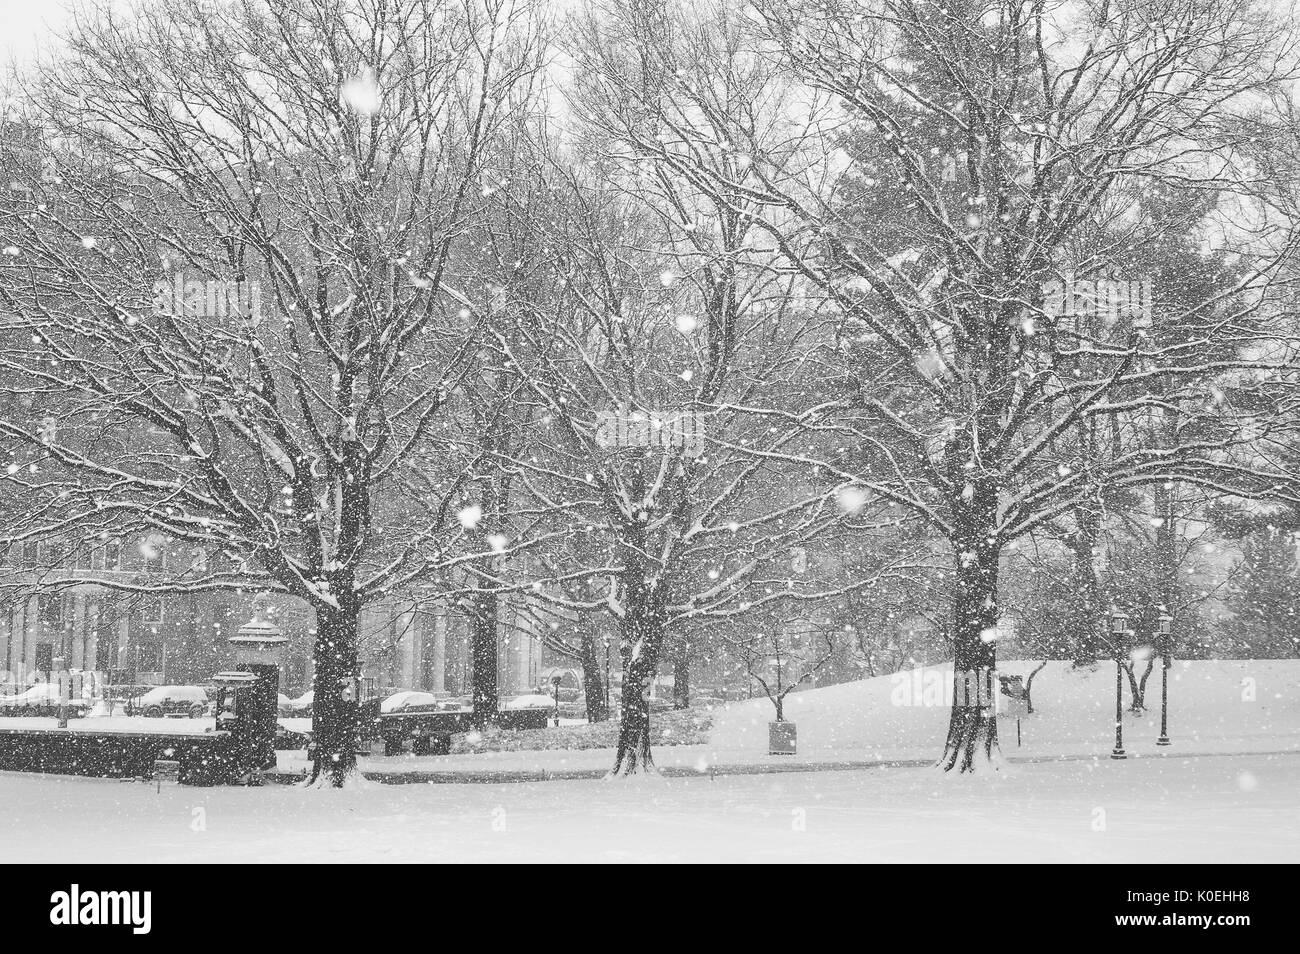 L'ingresso est del campus Homewood della Johns Hopkins University di Baltimora, Maryland, è coperto di neve e più neve sta cadendo, 2015. Cortesia Eric Chen. Foto Stock